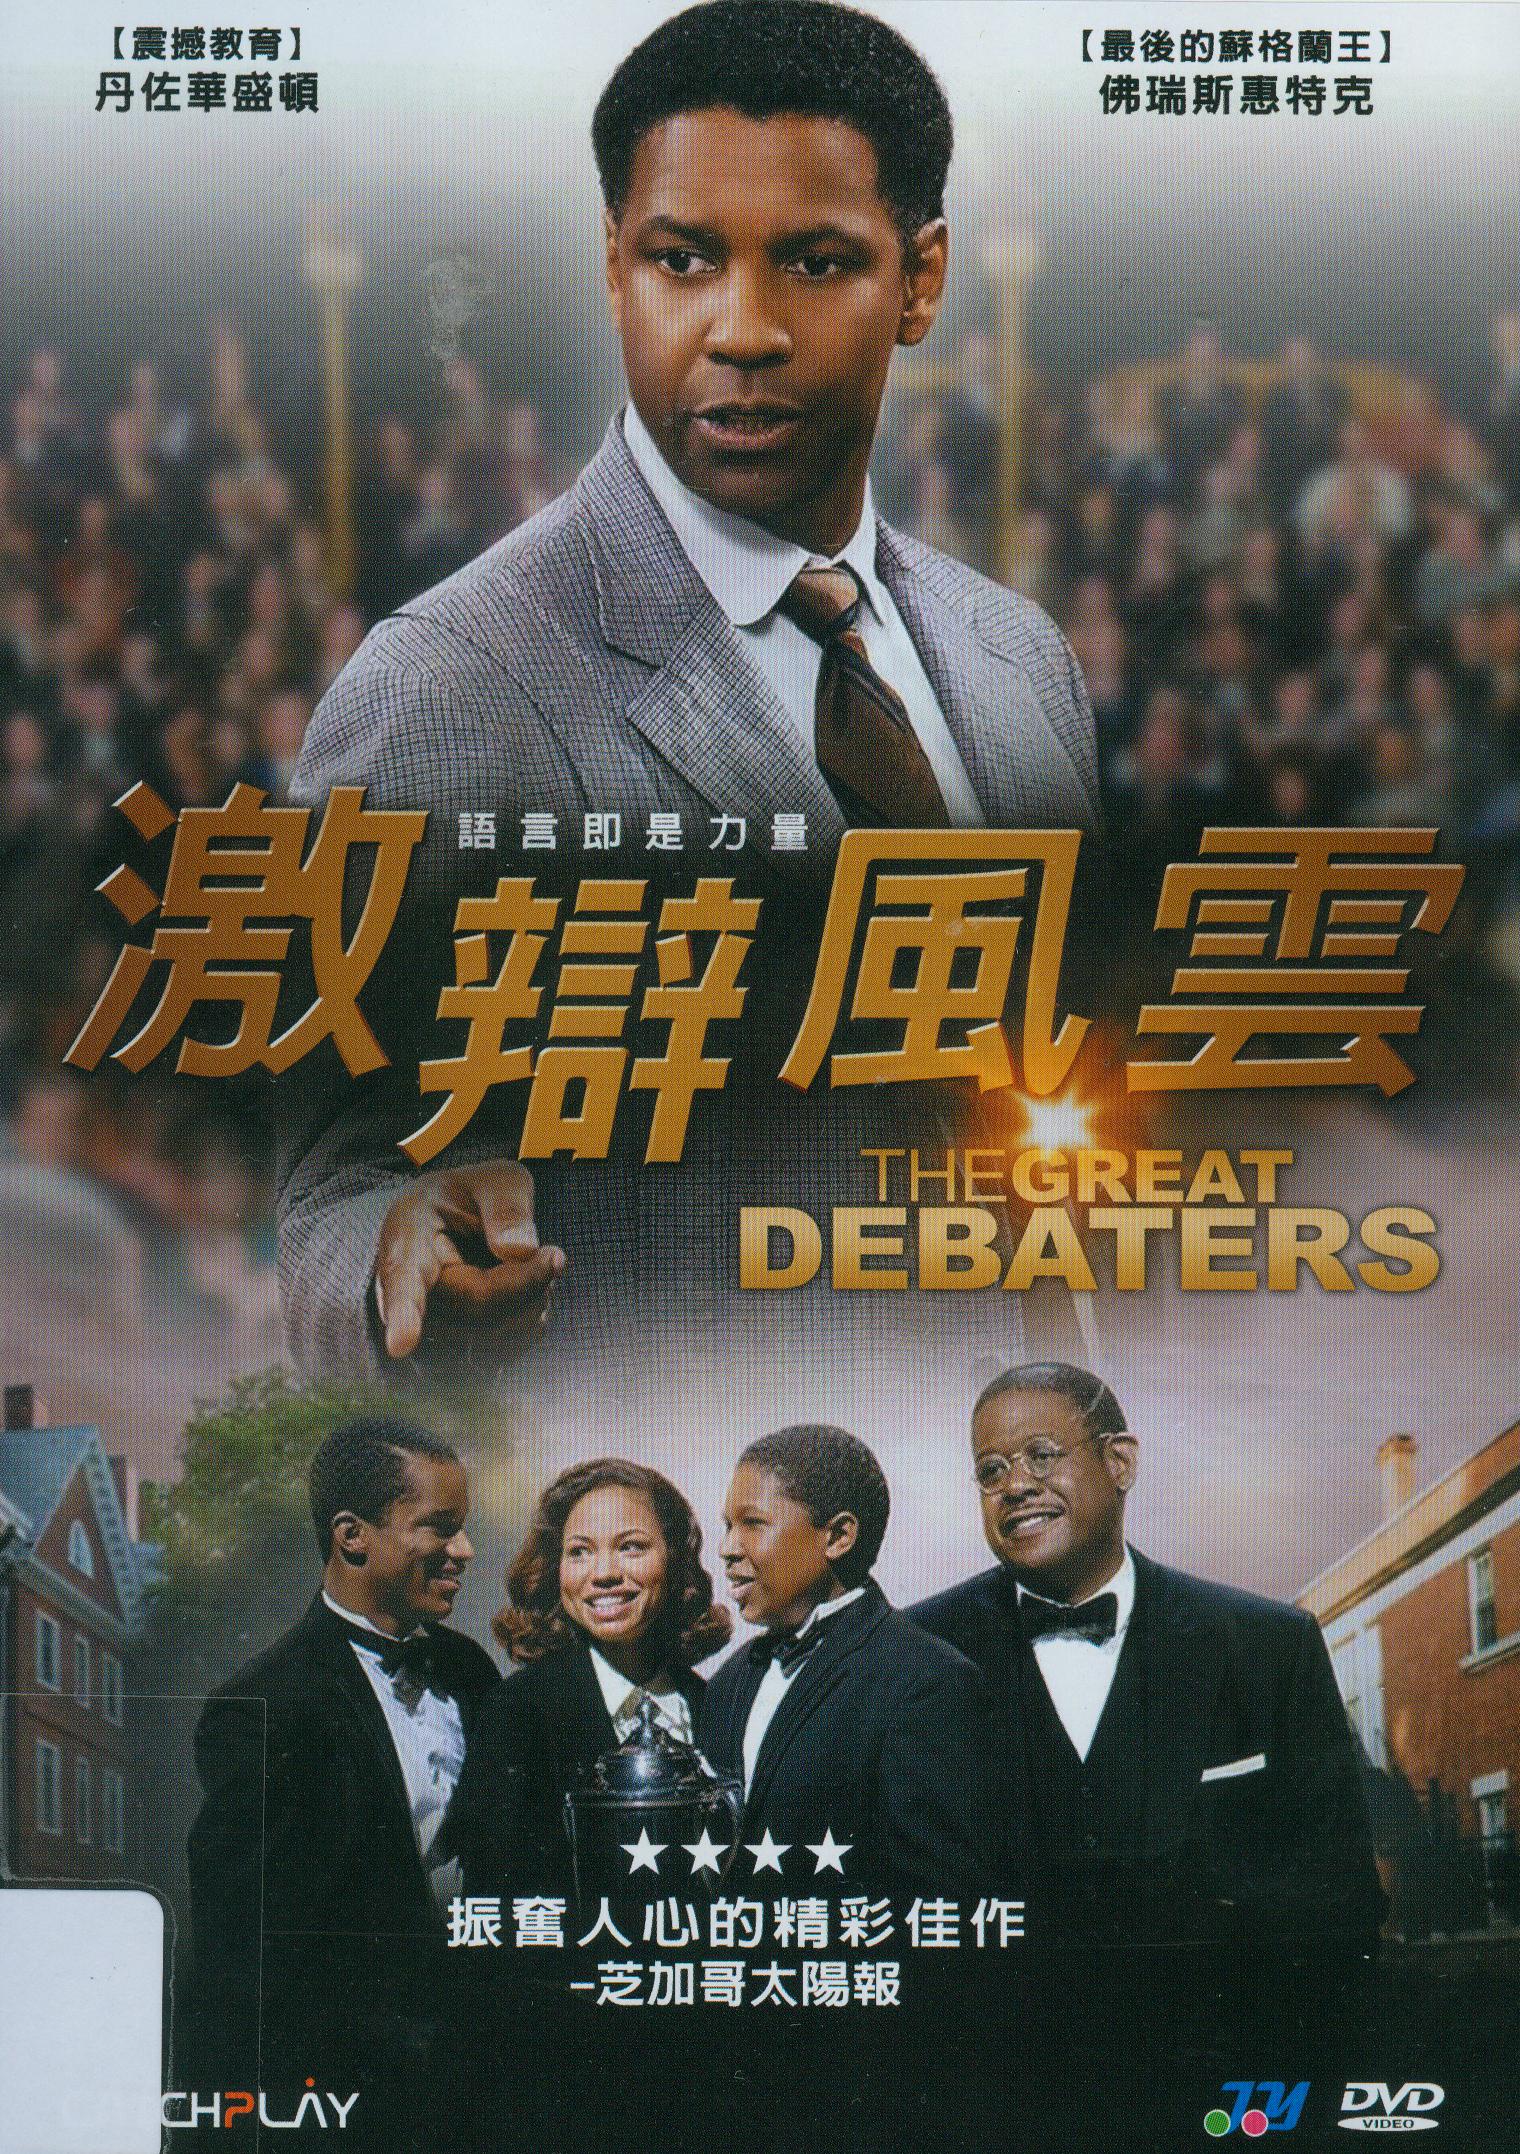 激辯風雲[保護級:劇情] : The great debaters